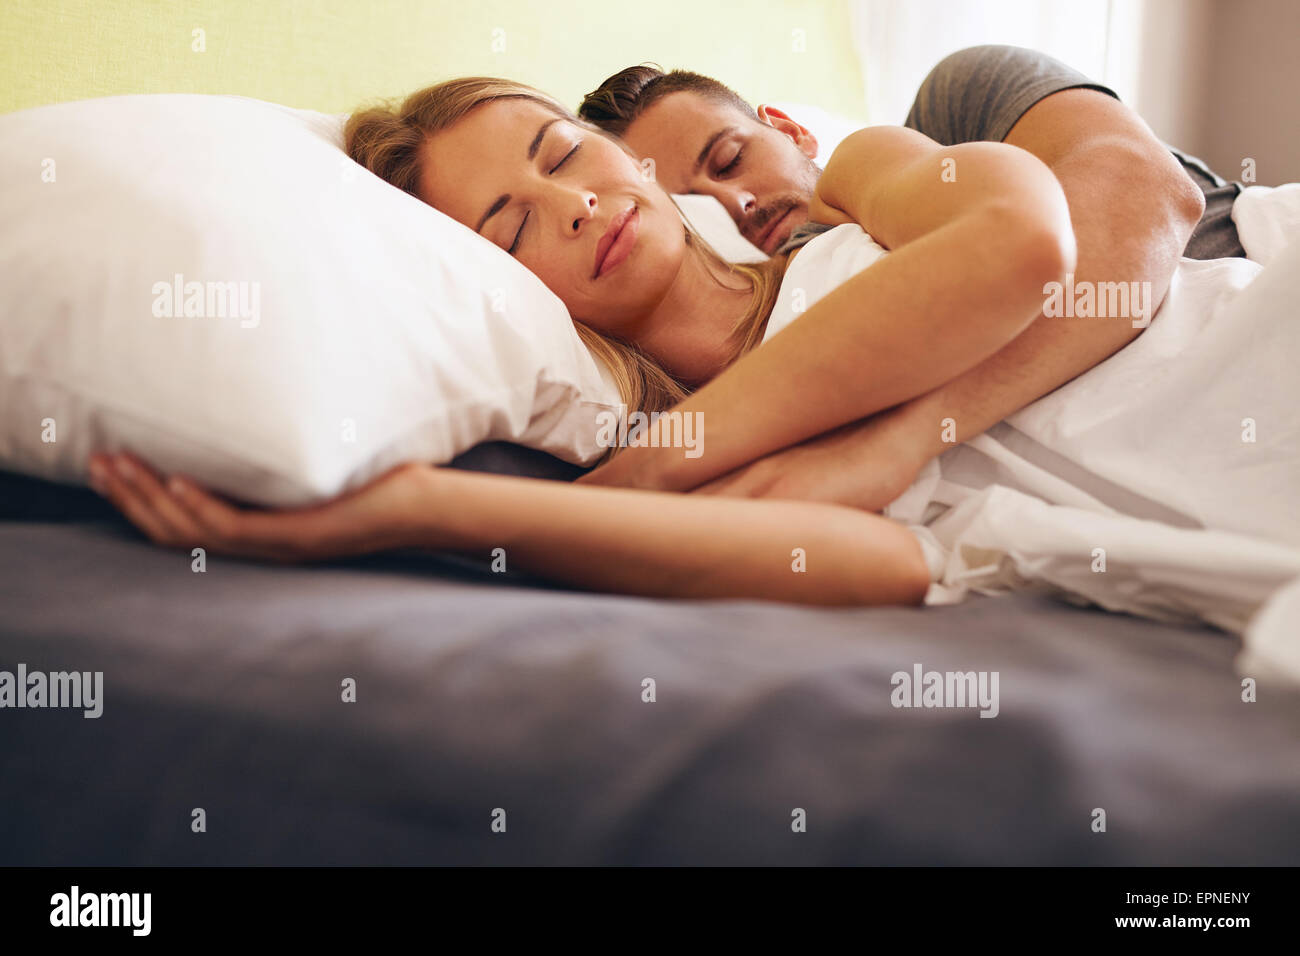 Image d'un jeune couple ensemble dormir confortablement sur le lit. Jeune homme et femme couchée endormie. Banque D'Images